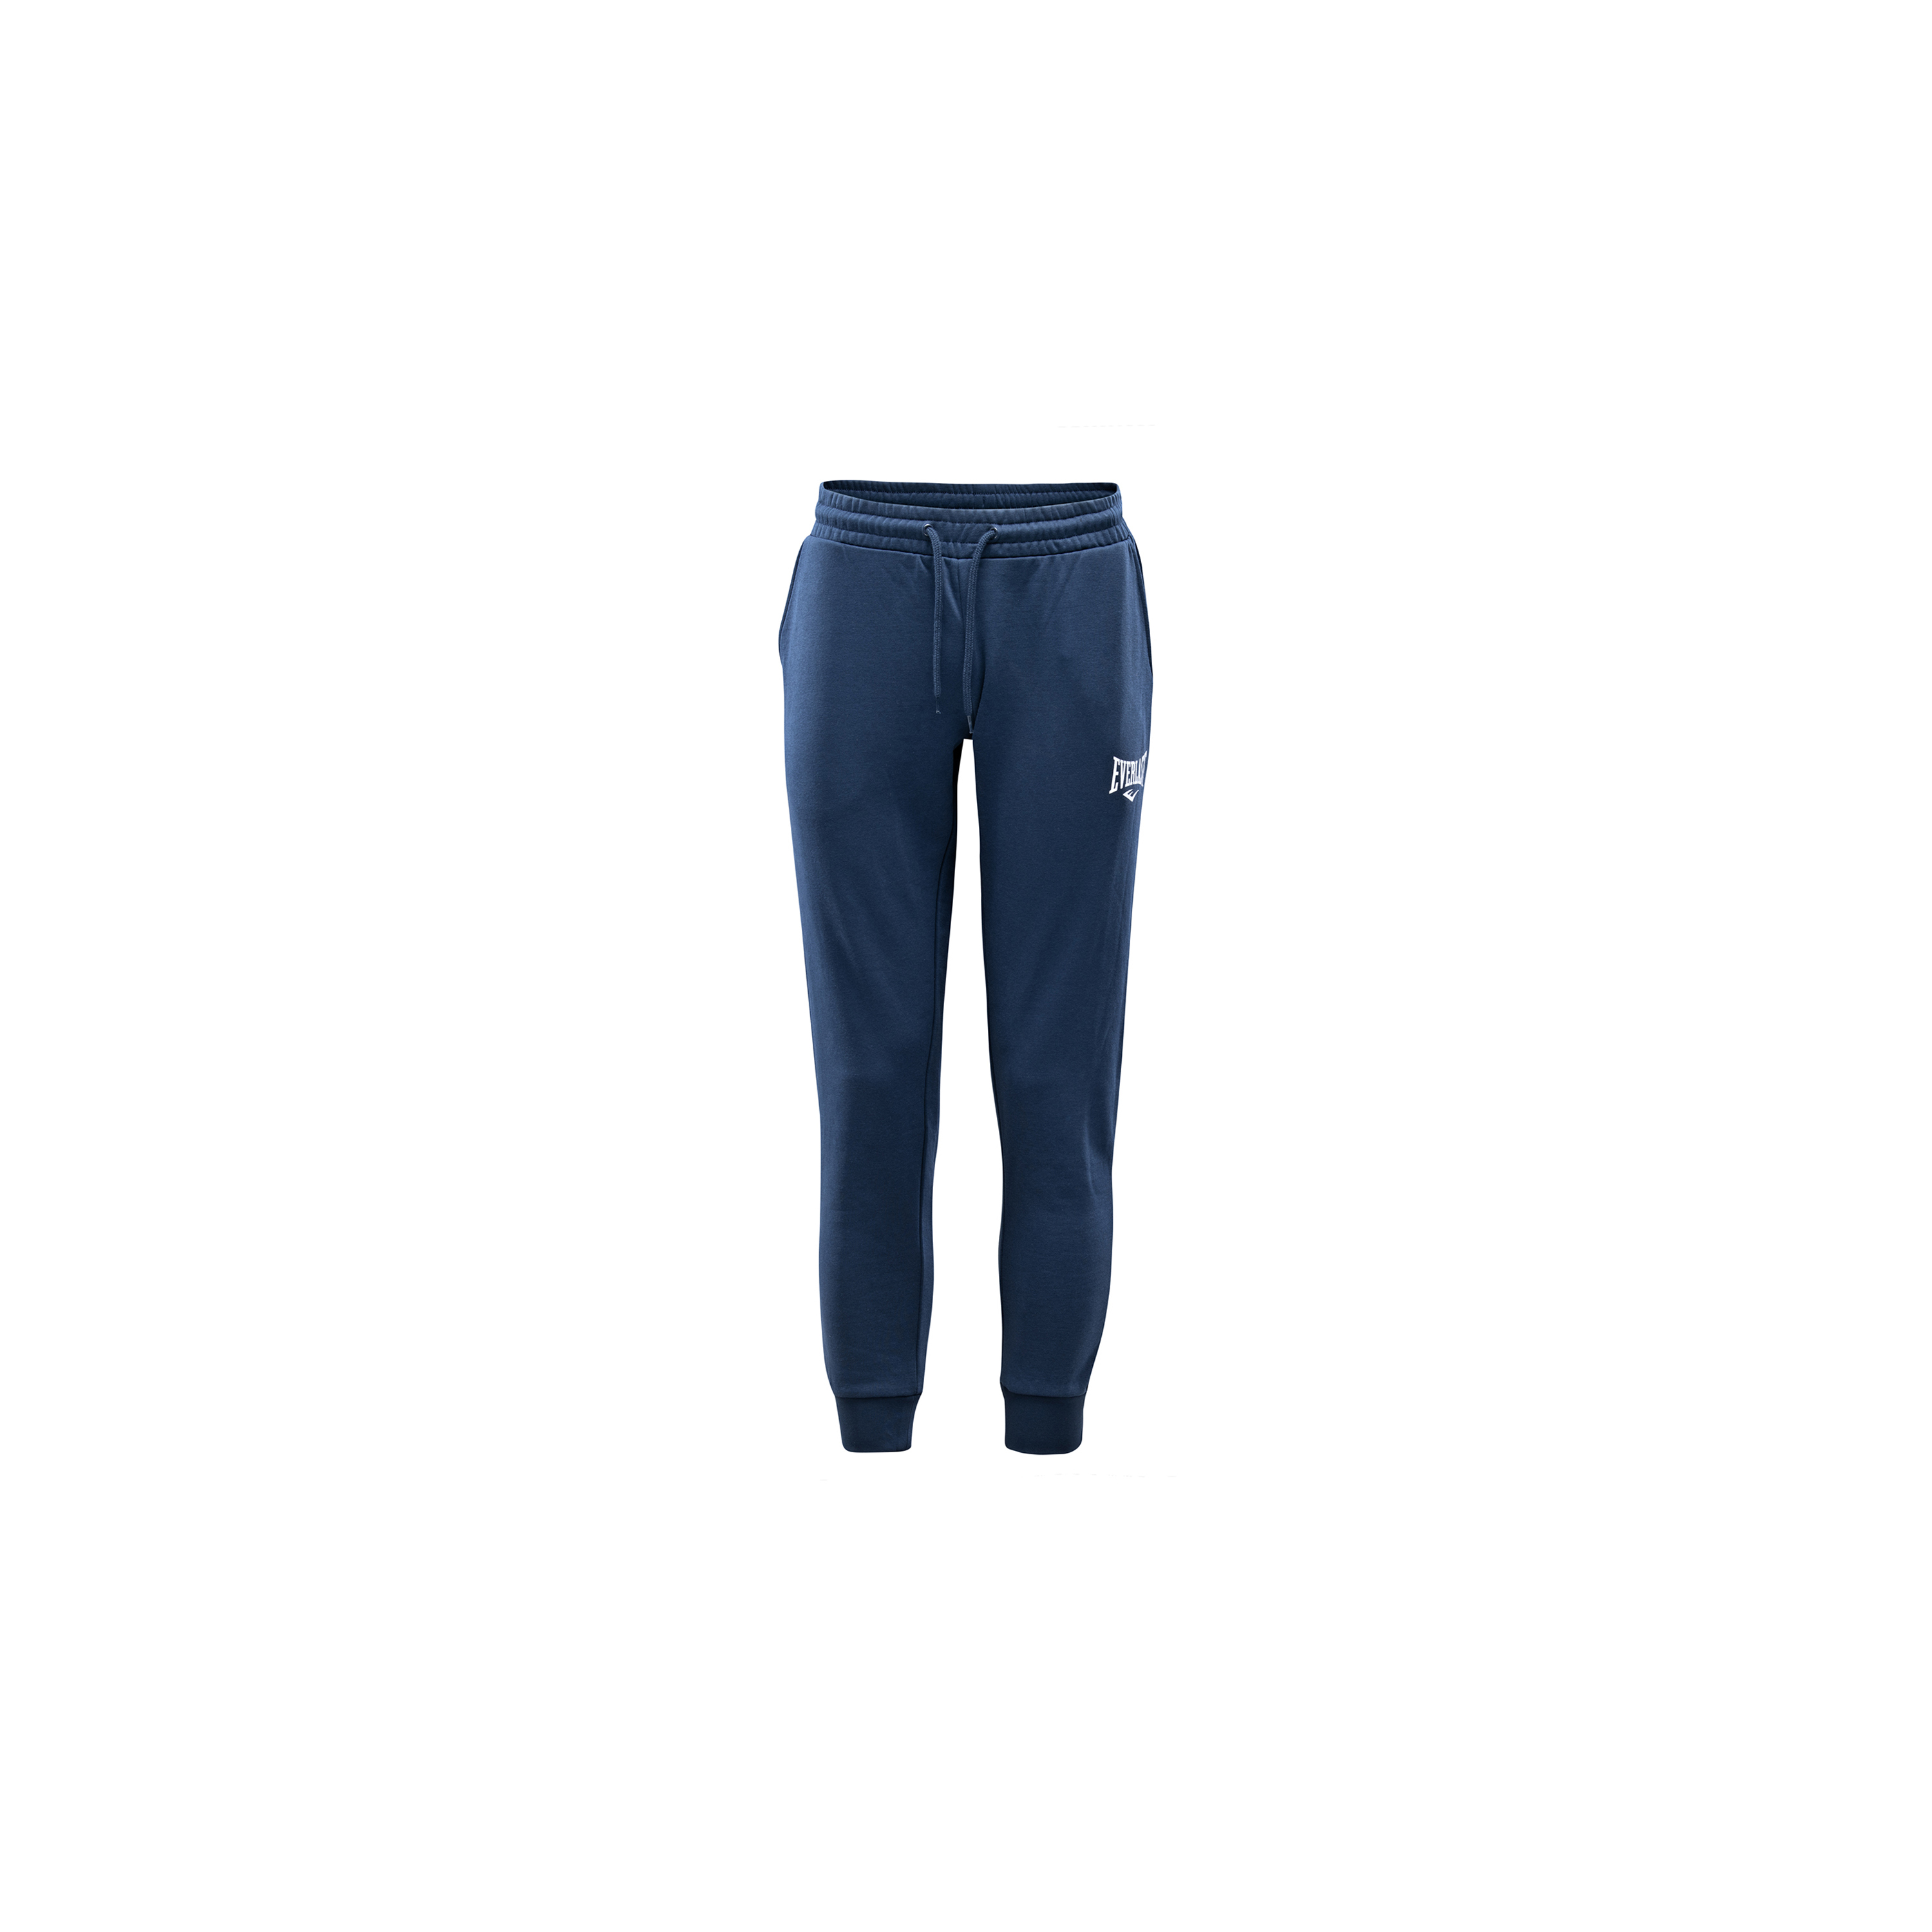 Pantalones Everlast Audubon - azul-marino - 